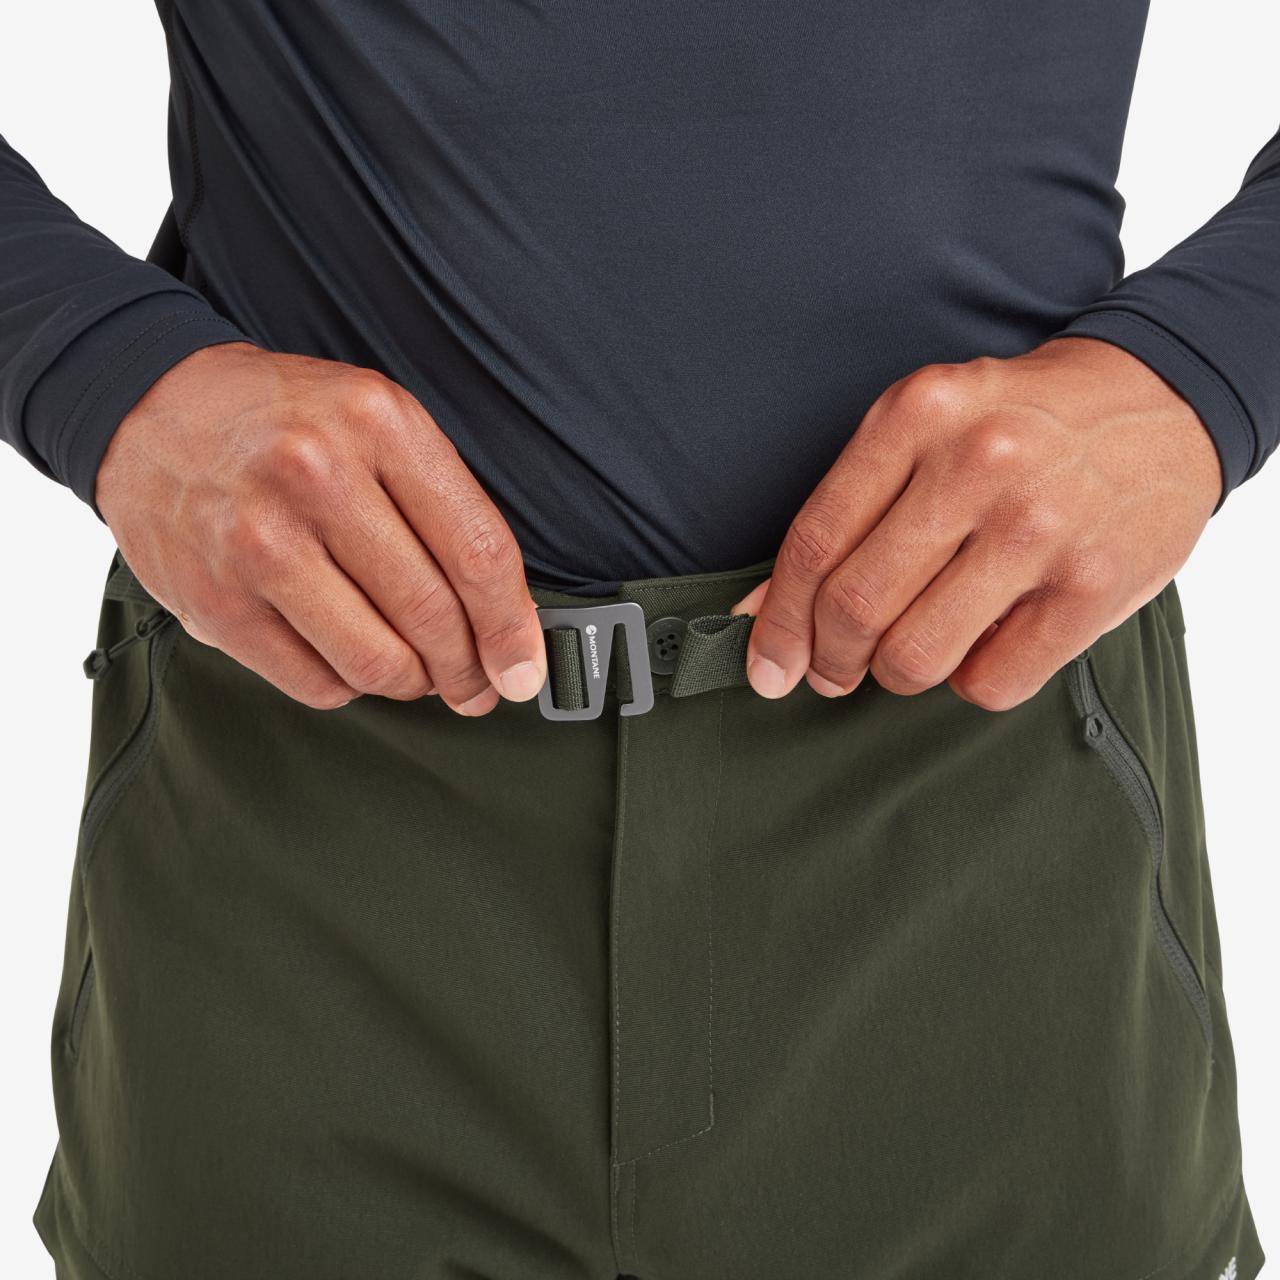 TERRA XT PANTS SHORT LEG-OAK GREEN-28/XS Short pánské kalhoty zelné